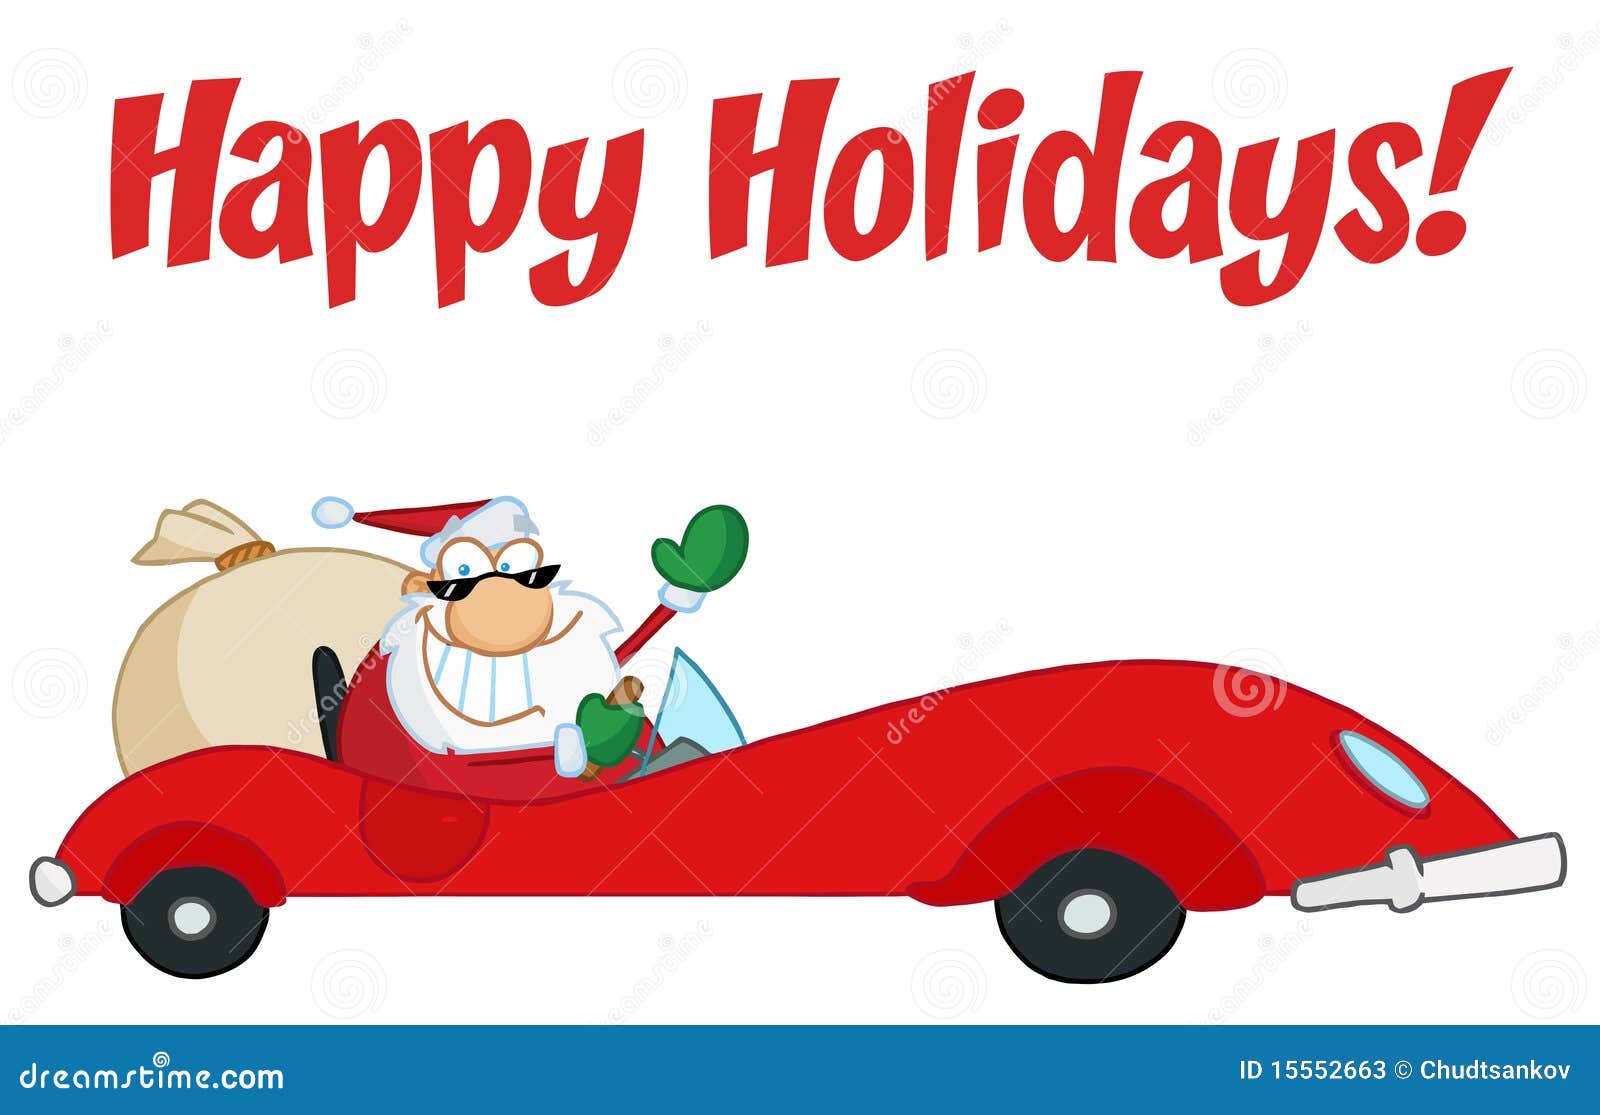 happy-holidays-greeting-santa-driving-15